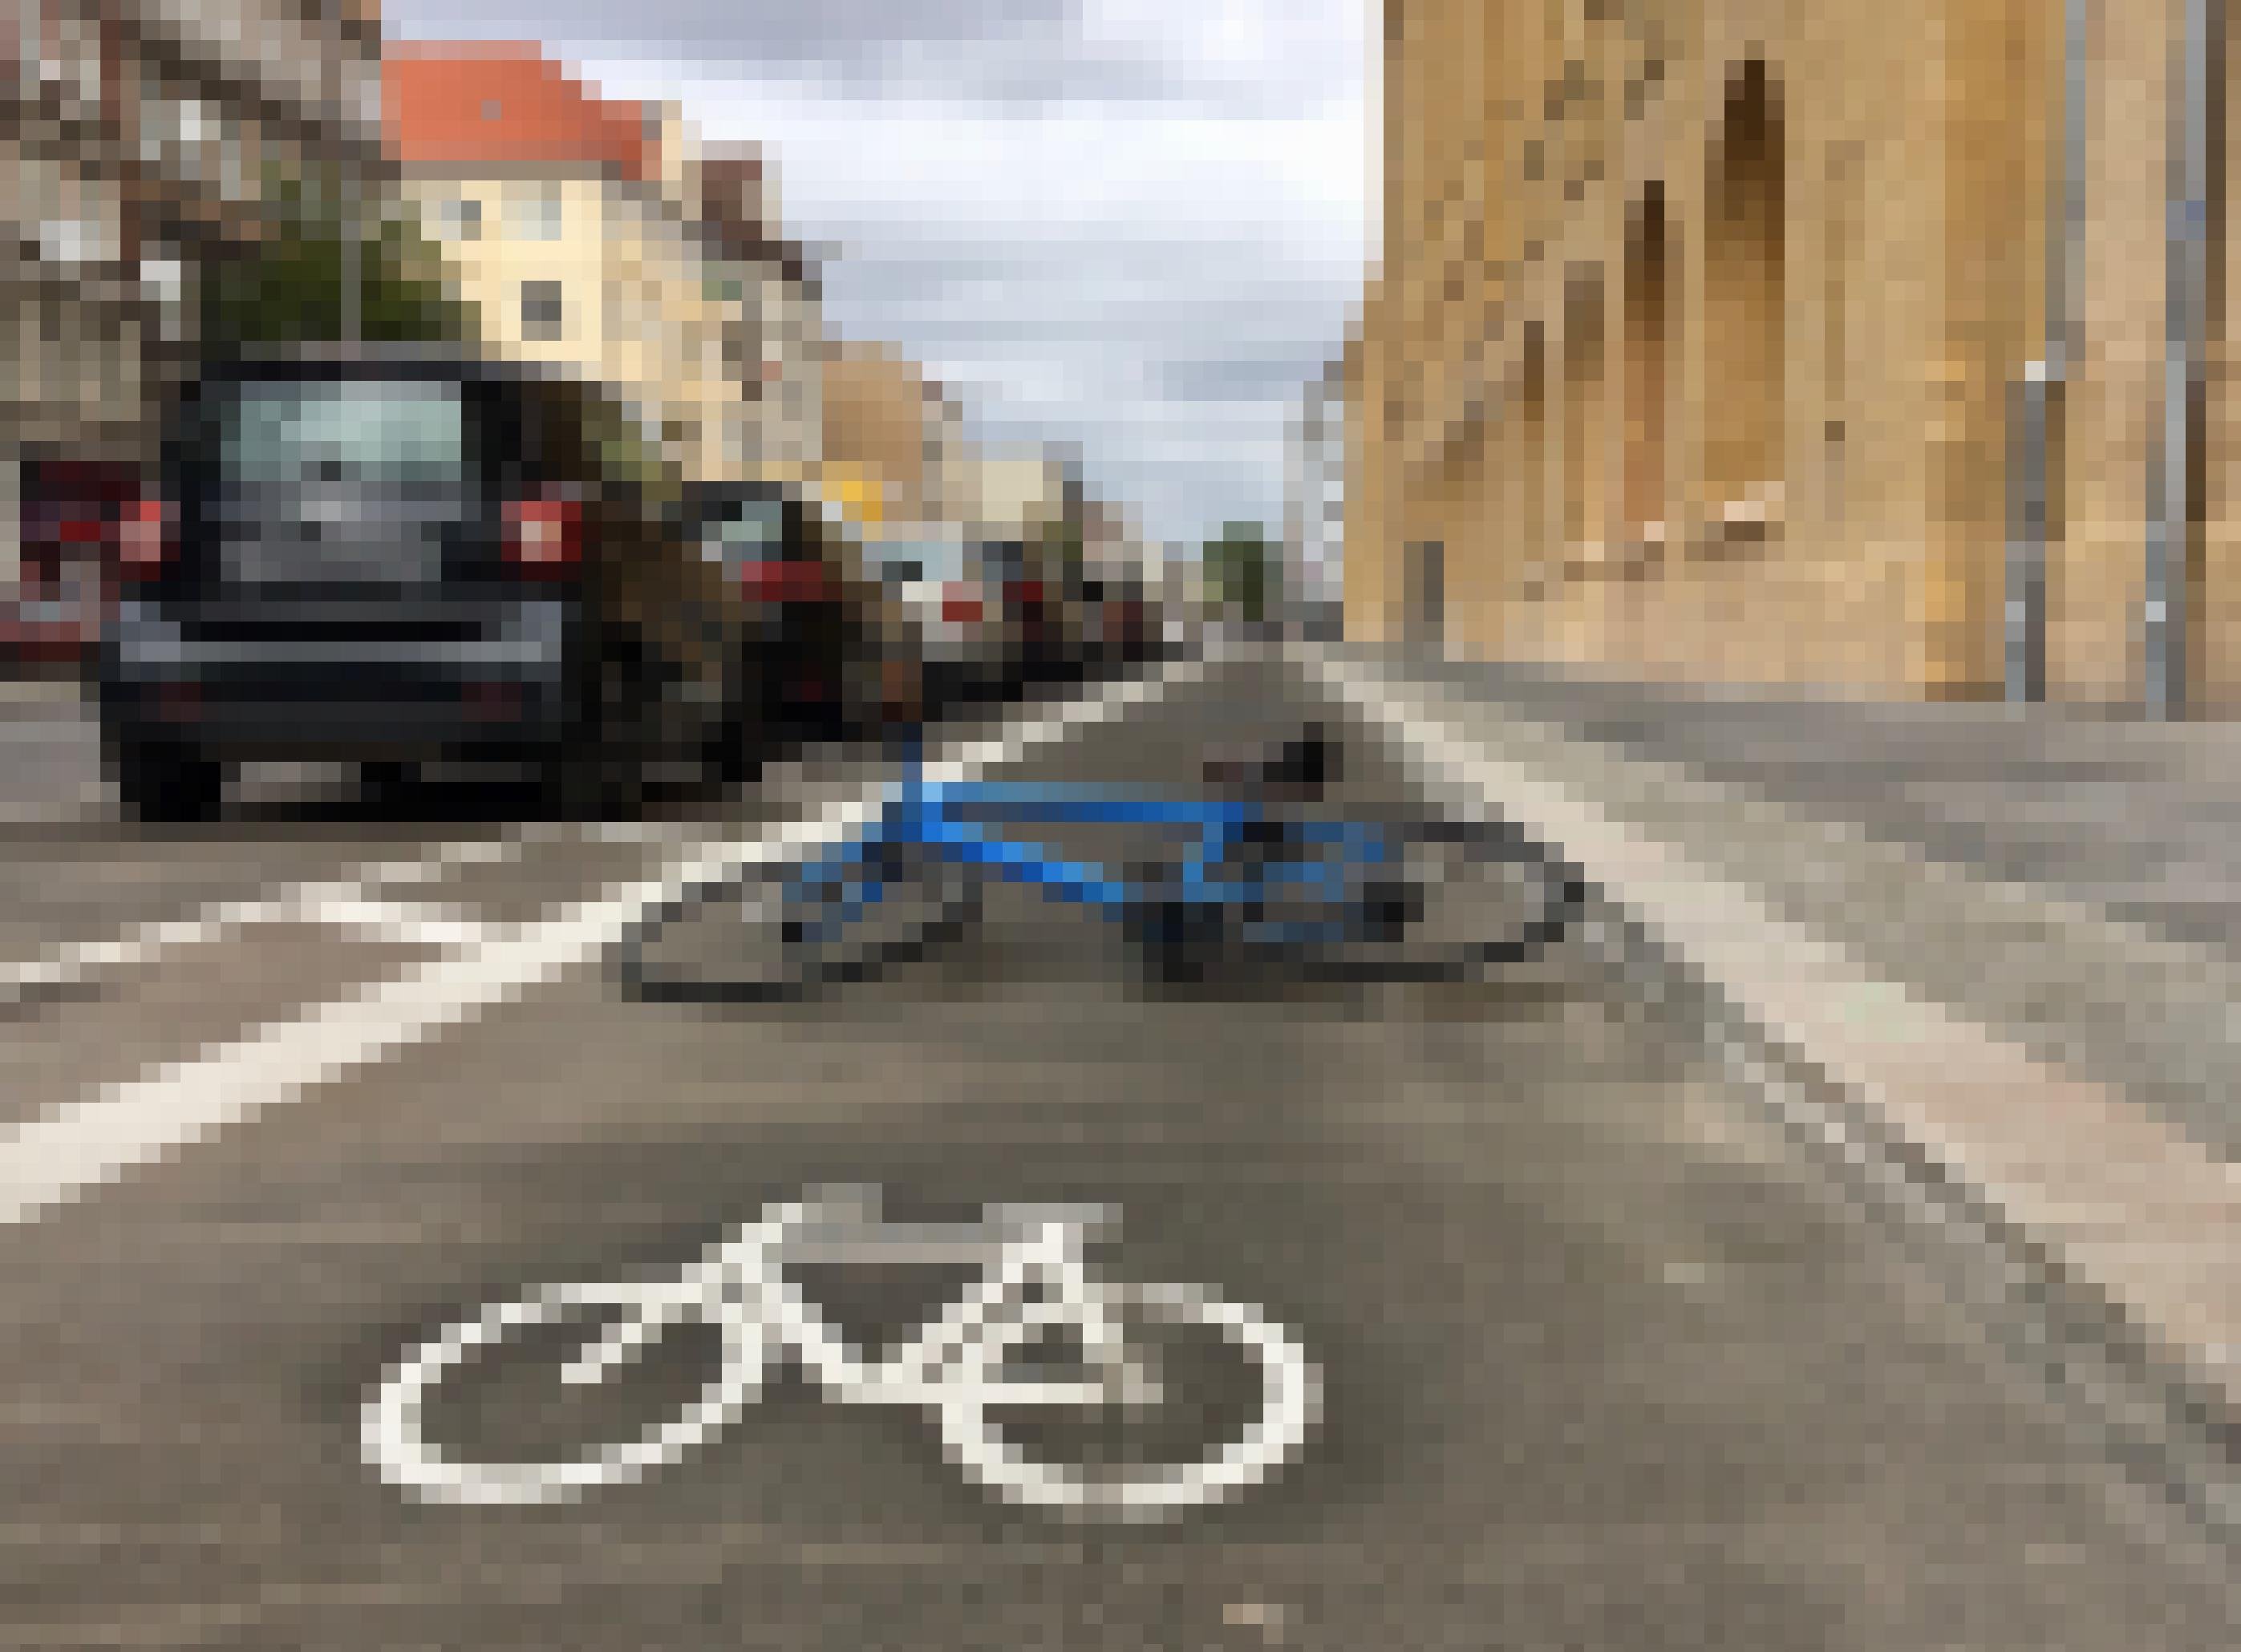 Eine Fahrradspur auf einer Straße mit parkendem Autos. Im Vordergrund ist das Piktogramm eines Fahrrades zu sehen, direkt dahinter liegt ein materielles, blaues Sportrad.